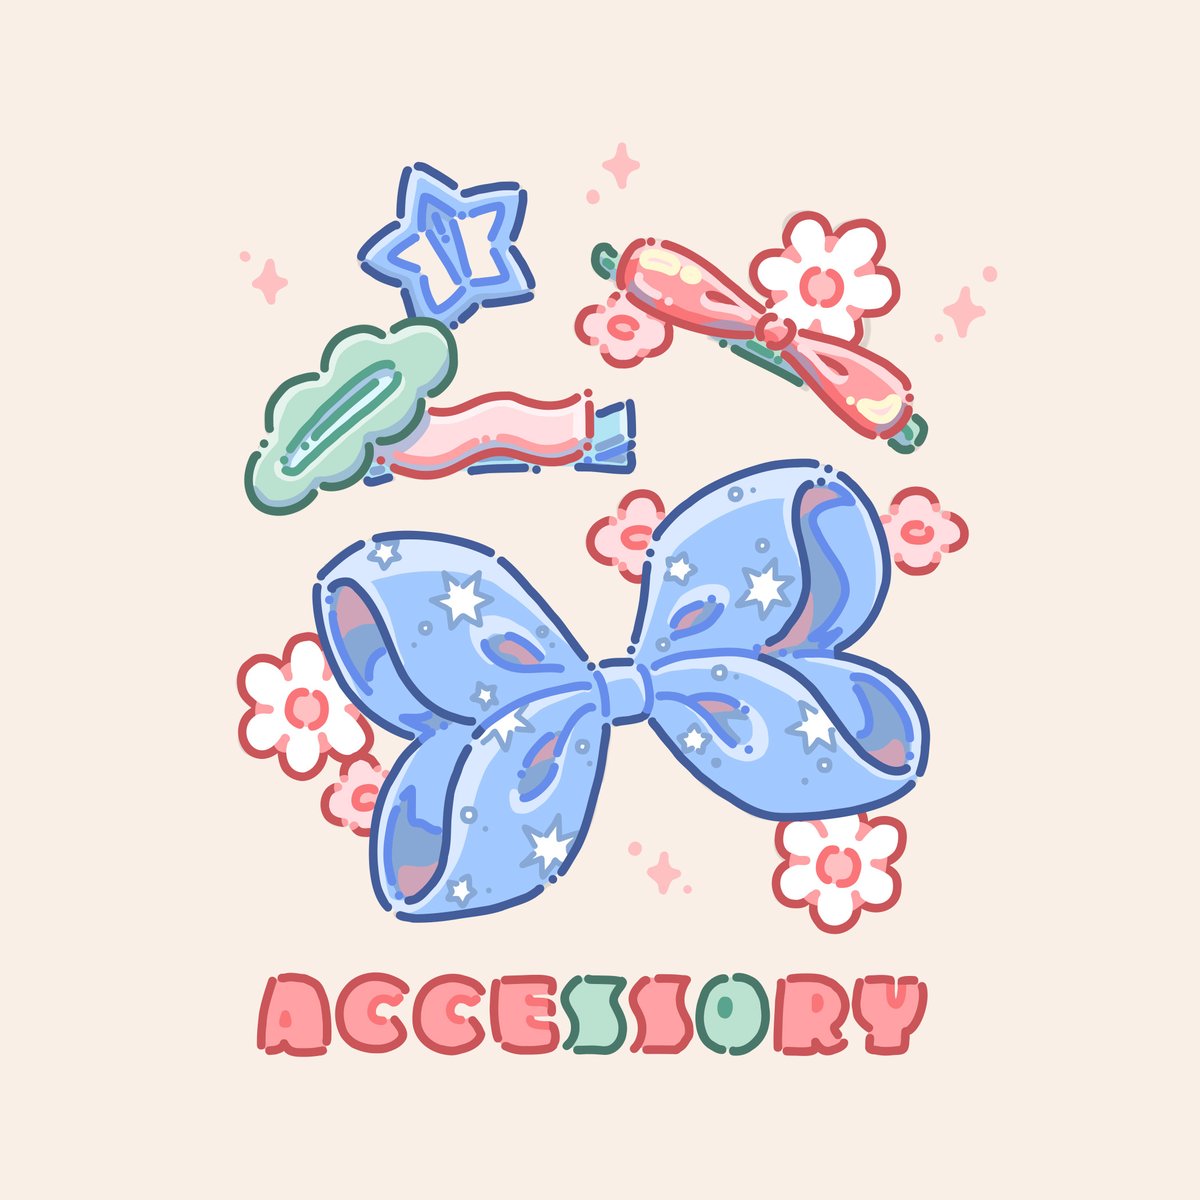 accessories

#illustration #イラスト